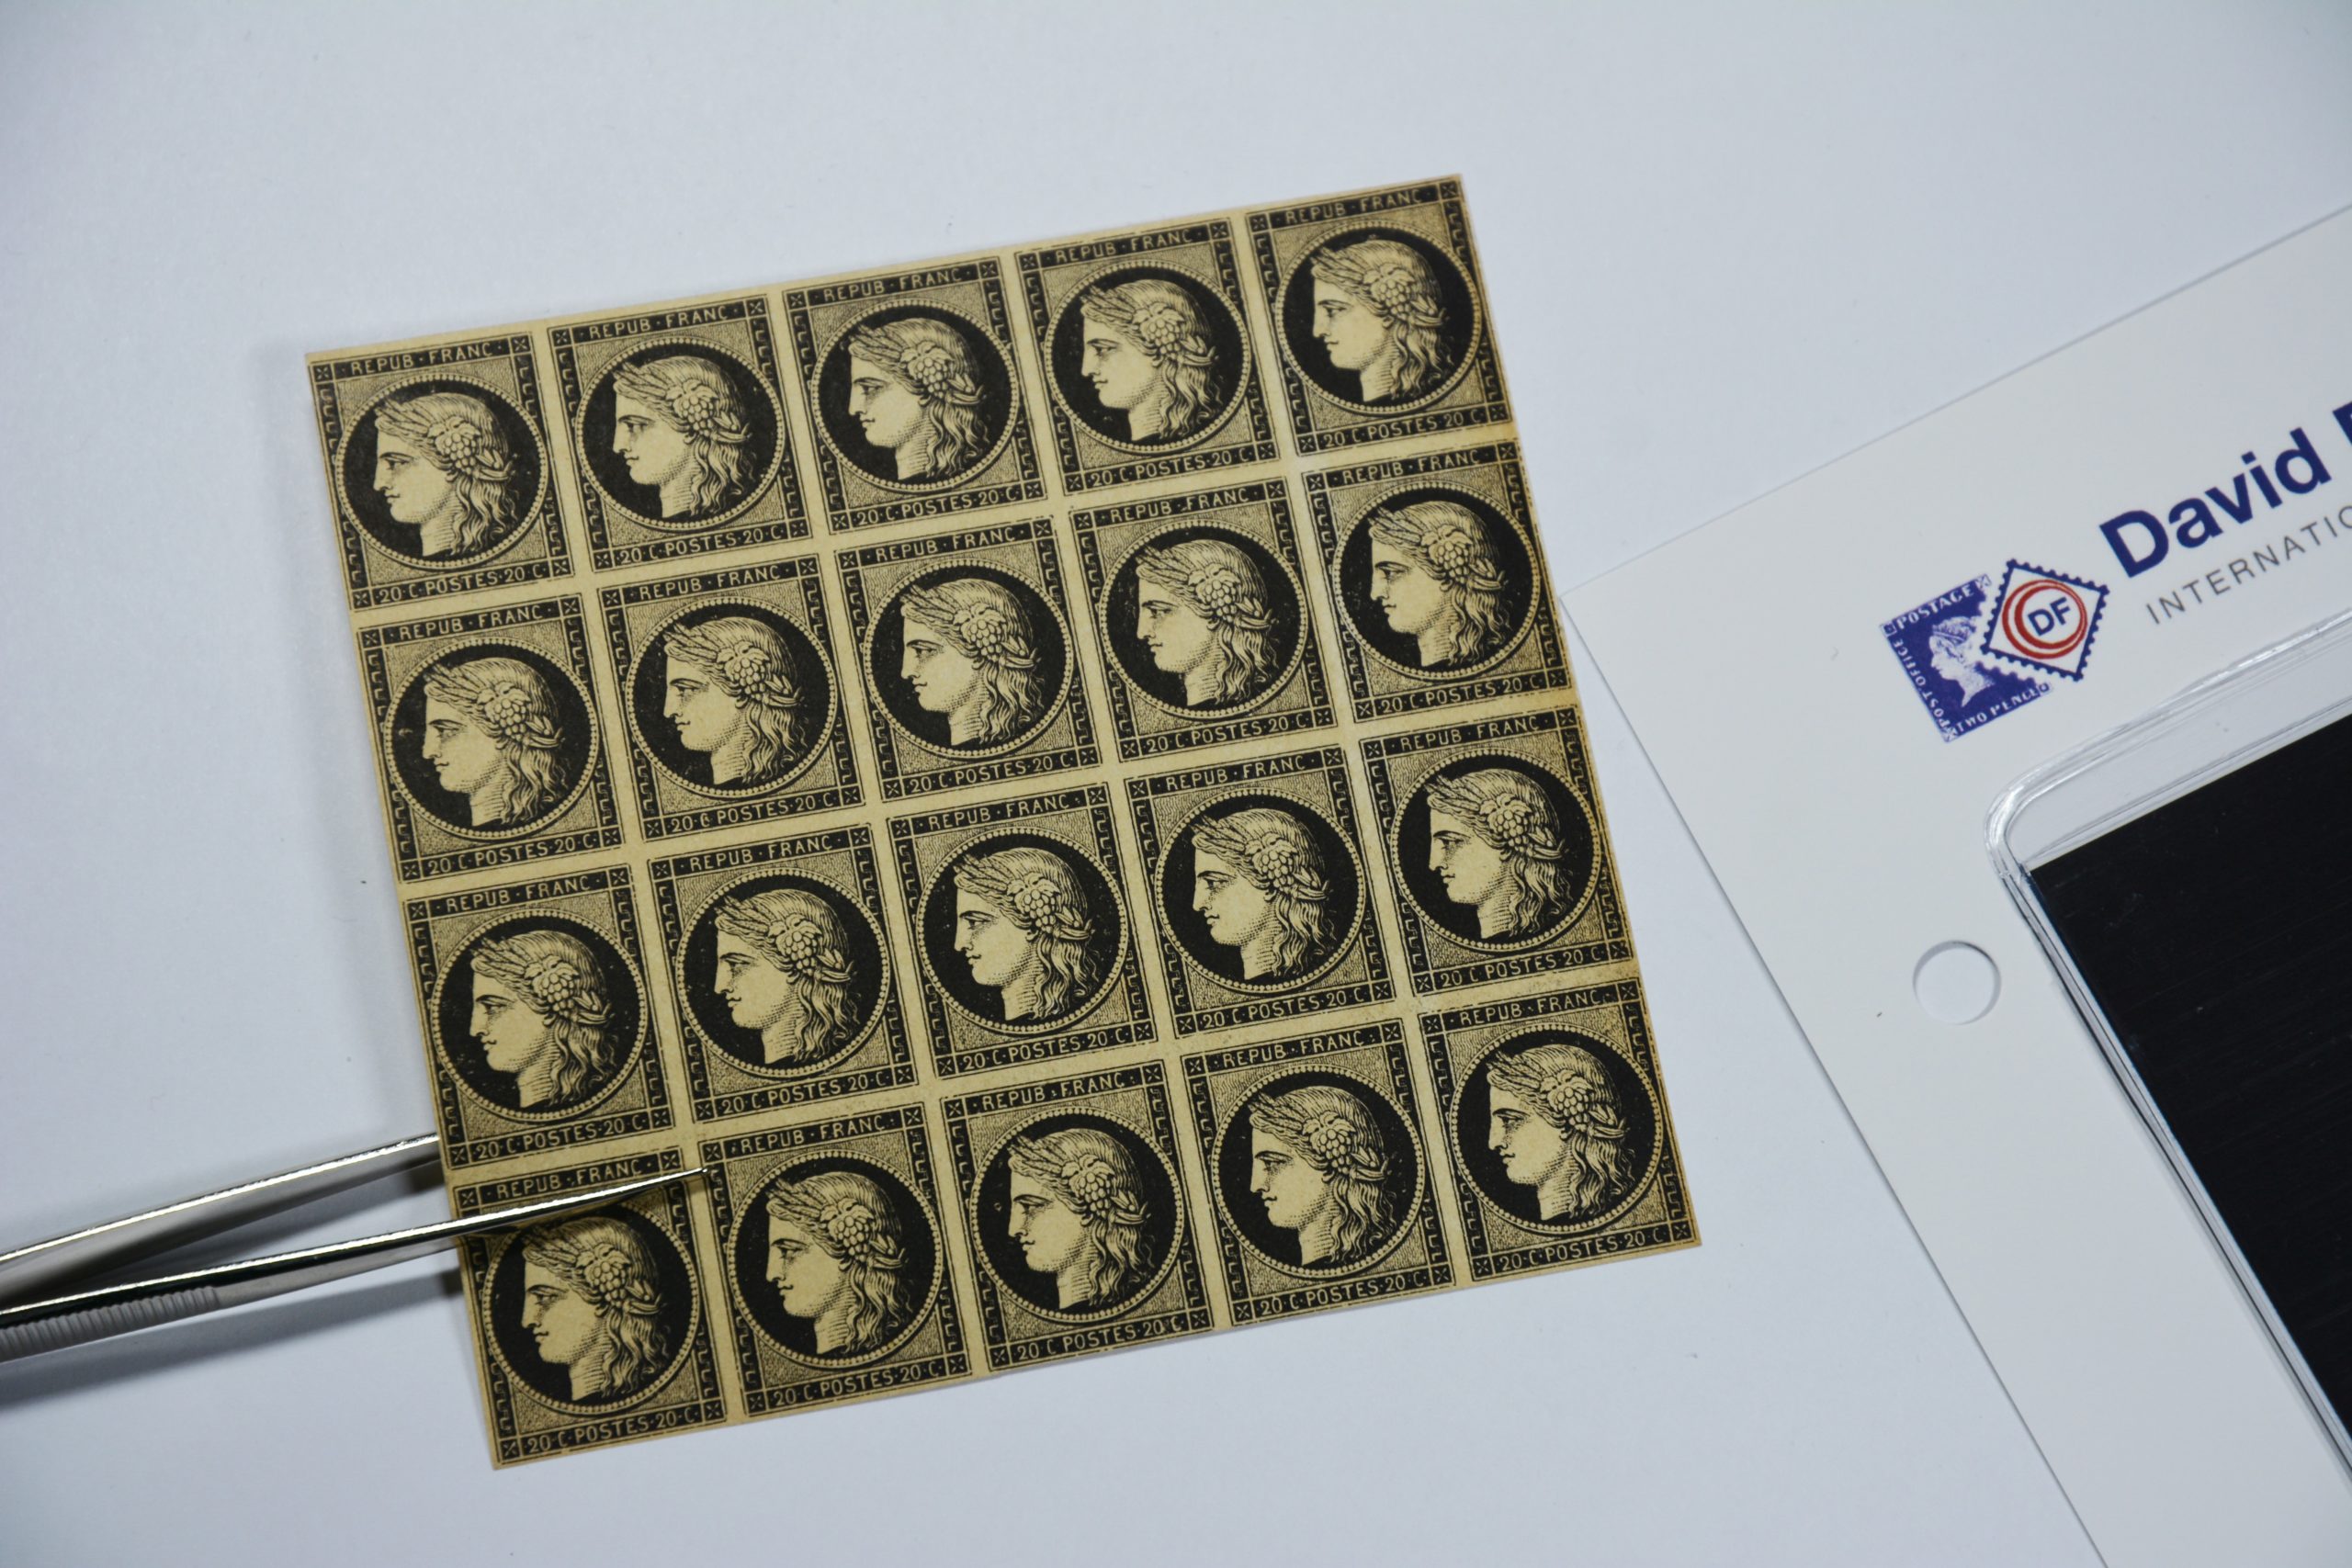 Comment estimer la valeur d'une collection de timbres ?